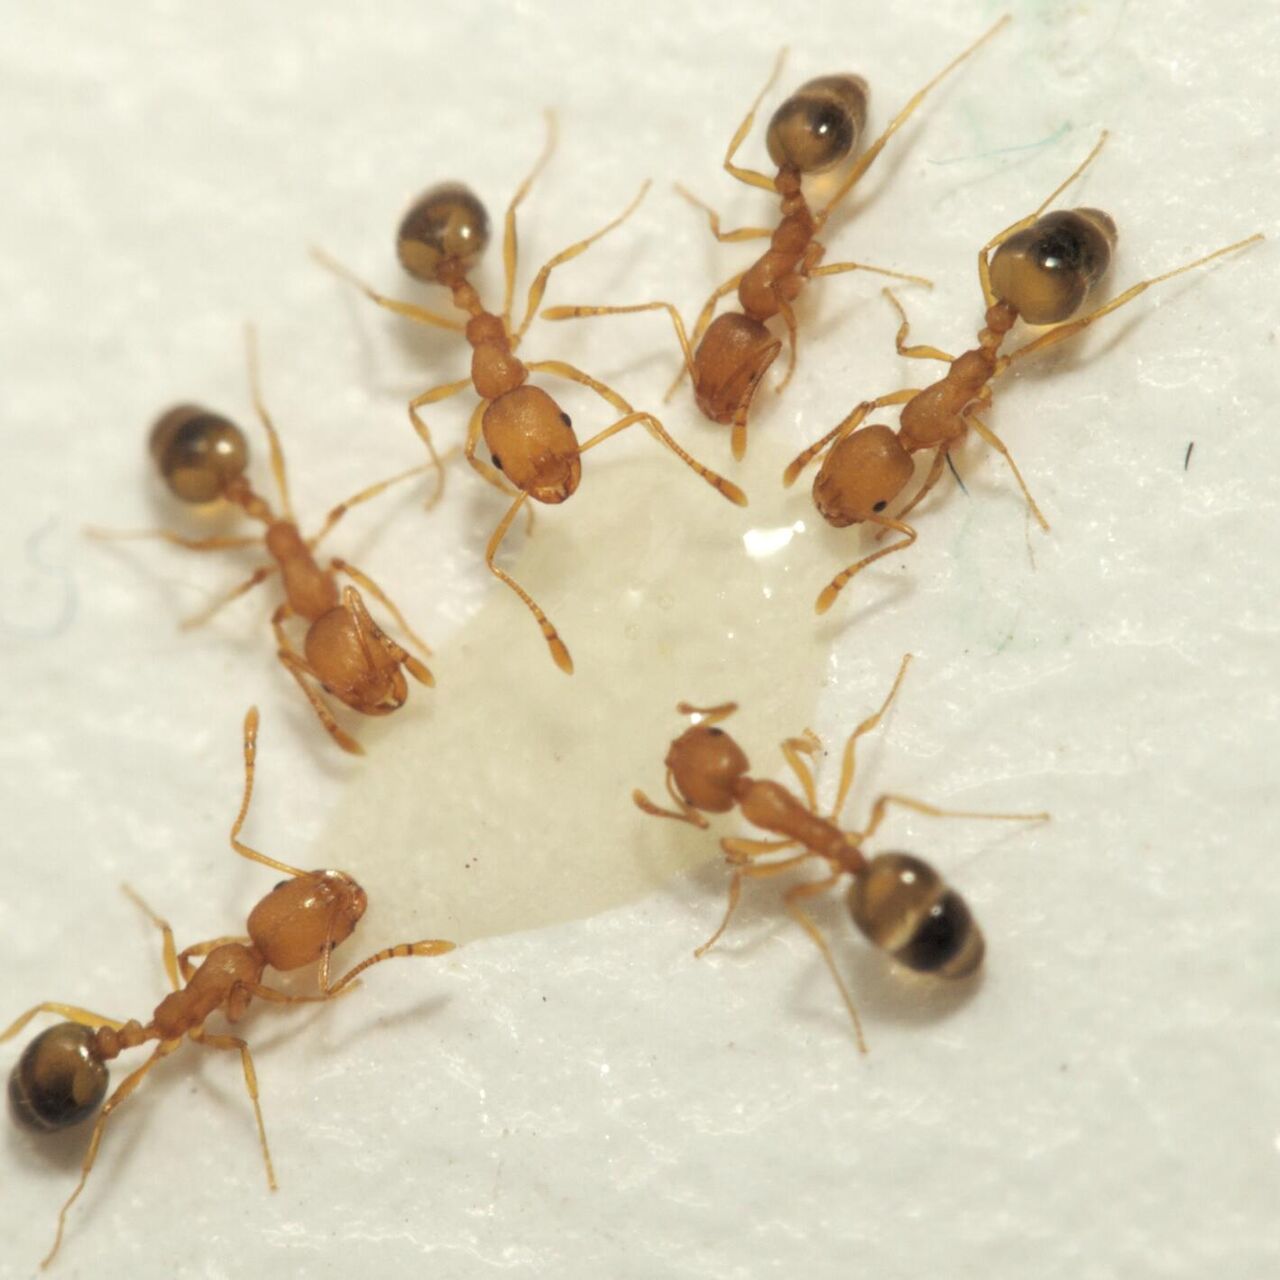 Как избавиться от рыжих муравьев в квартире